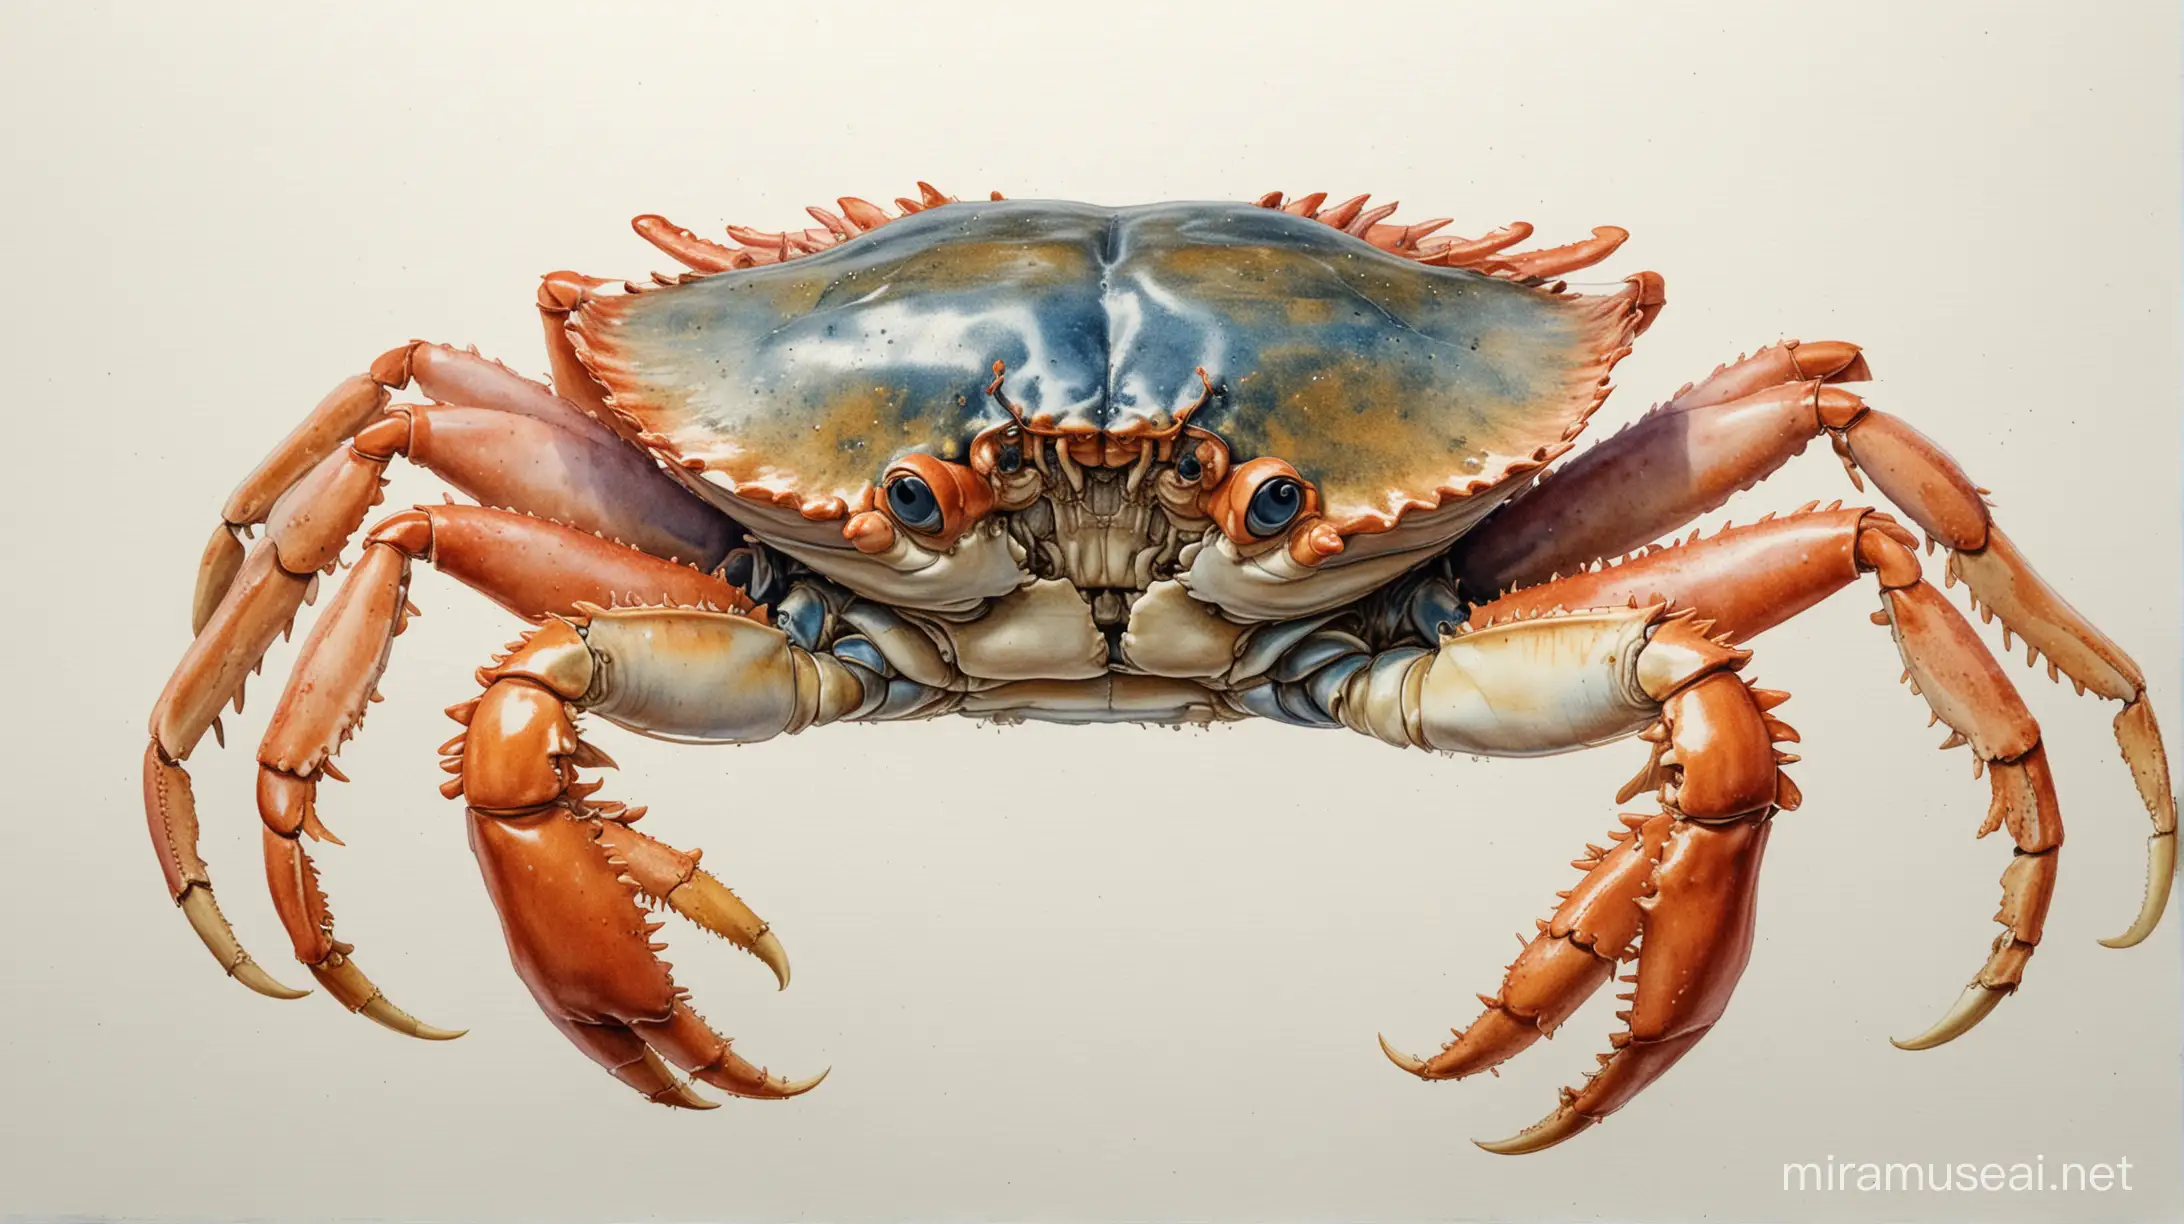 Imagine un dessin technique précis d'un crabe, avec tous les détails anatomiques soigneusement rendus; aquarelle